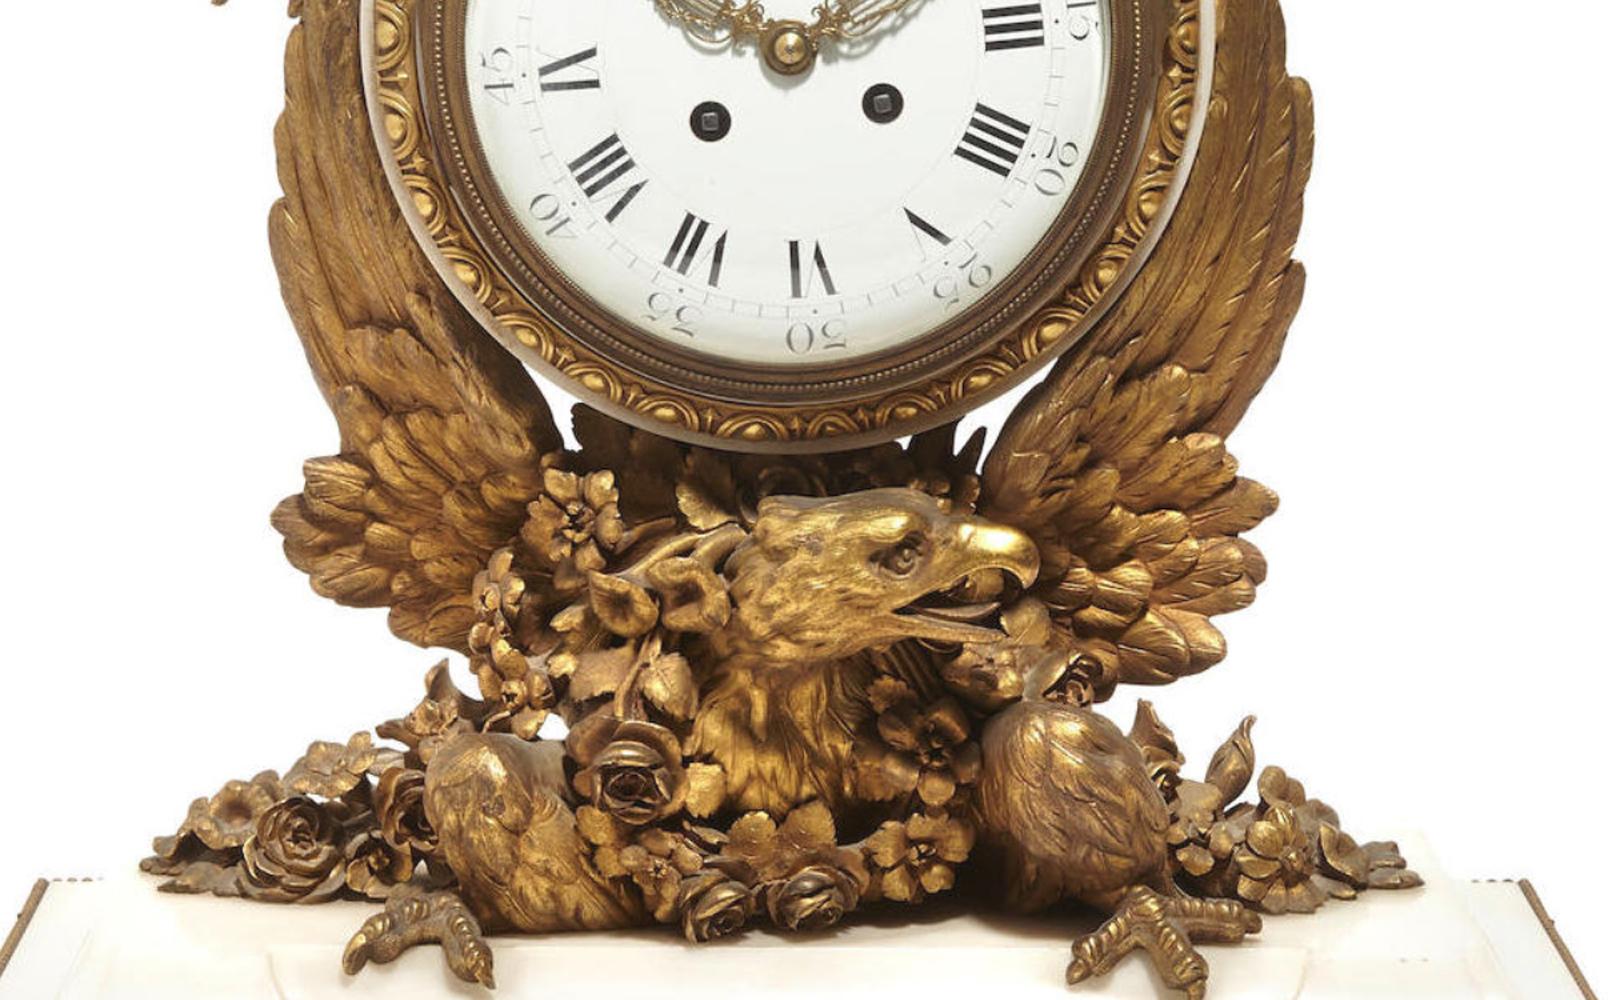 Spektakuläre und einzigartige Französisch Napoleon III Ormolu montiert weißem Marmor Kaminsims Uhr, 19th century.

Die Uhr wird von einer vergoldeten Bronze Ananas Finial mit Bändern über einem Porzellan Zifferblatt mit römischen Ziffern in einem